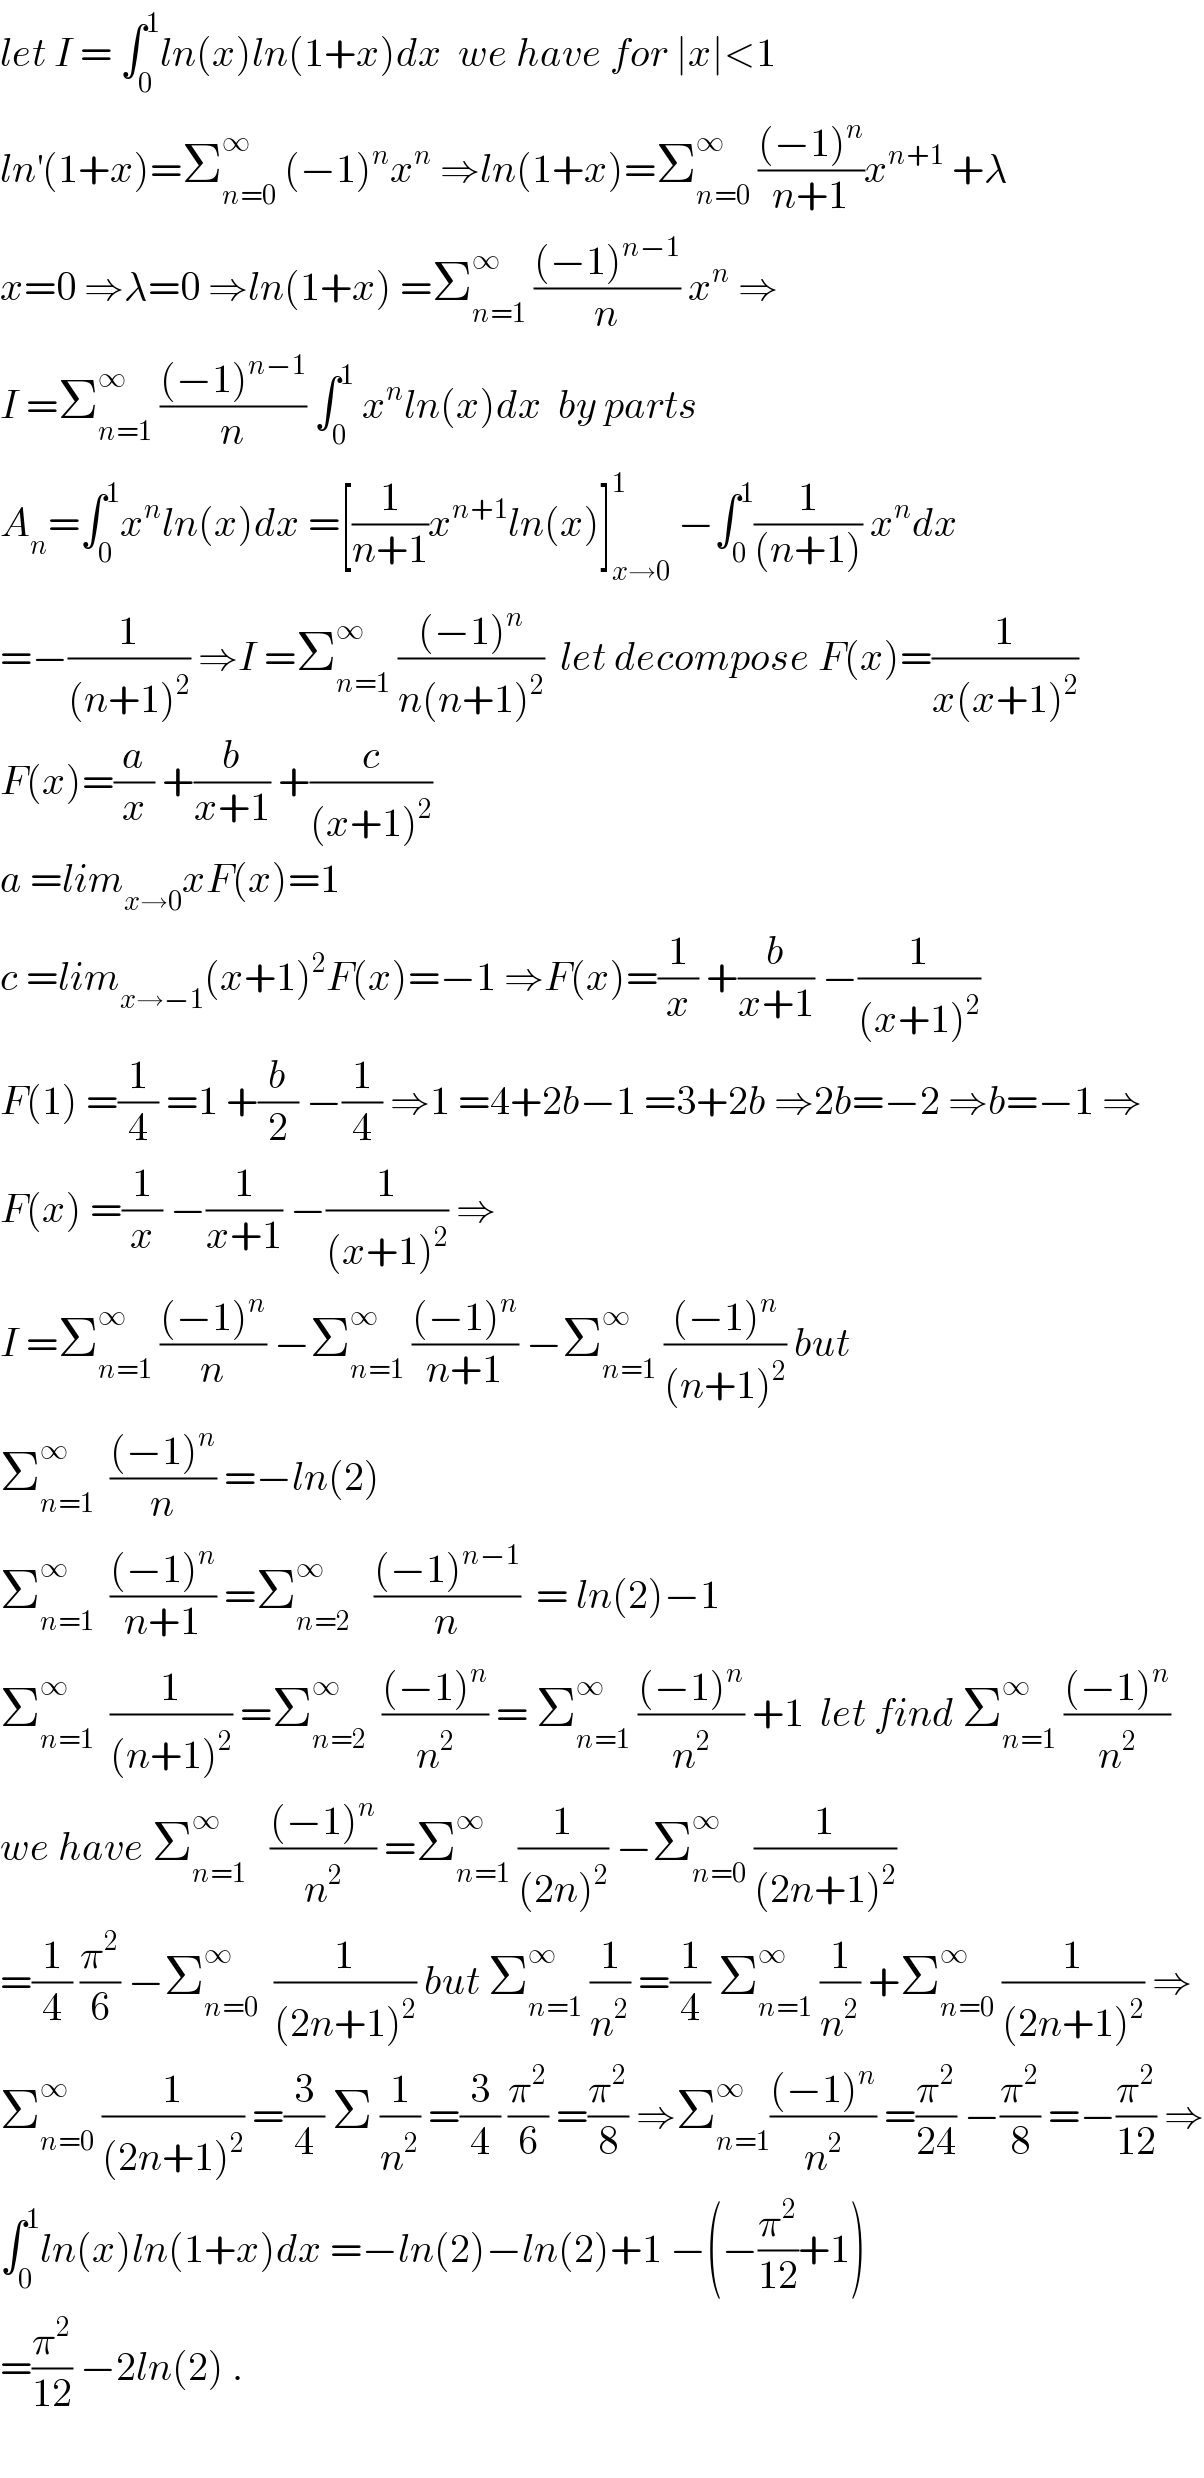 let I = ∫_0 ^1 ln(x)ln(1+x)dx  we have for ∣x∣<1  ln^′ (1+x)=Σ_(n=0) ^∞  (−1)^n x^n  ⇒ln(1+x)=Σ_(n=0) ^∞  (((−1)^n )/(n+1))x^(n+1)  +λ  x=0 ⇒λ=0 ⇒ln(1+x) =Σ_(n=1) ^∞  (((−1)^(n−1) )/n) x^n  ⇒  I =Σ_(n=1) ^∞  (((−1)^(n−1) )/n) ∫_0 ^1  x^n ln(x)dx  by parts  A_n =∫_0 ^1 x^n ln(x)dx =[(1/(n+1))x^(n+1) ln(x)]_(x→0) ^1  −∫_0 ^1 (1/((n+1))) x^n dx  =−(1/((n+1)^2 )) ⇒I =Σ_(n=1) ^∞  (((−1)^n )/(n(n+1)^2 ))  let decompose F(x)=(1/(x(x+1)^2 ))  F(x)=(a/x) +(b/(x+1)) +(c/((x+1)^2 ))  a =lim_(x→0) xF(x)=1  c =lim_(x→−1) (x+1)^2 F(x)=−1 ⇒F(x)=(1/x) +(b/(x+1)) −(1/((x+1)^2 ))  F(1) =(1/4) =1 +(b/2) −(1/4) ⇒1 =4+2b−1 =3+2b ⇒2b=−2 ⇒b=−1 ⇒  F(x) =(1/x) −(1/(x+1)) −(1/((x+1)^2 )) ⇒  I =Σ_(n=1) ^∞  (((−1)^n )/n) −Σ_(n=1) ^∞  (((−1)^n )/(n+1)) −Σ_(n=1) ^∞  (((−1)^n )/((n+1)^2 )) but  Σ_(n=1) ^∞   (((−1)^n )/n) =−ln(2)  Σ_(n=1) ^∞   (((−1)^n )/(n+1)) =Σ_(n=2) ^∞    (((−1)^(n−1) )/n)  = ln(2)−1  Σ_(n=1) ^∞   (1/((n+1)^2 )) =Σ_(n=2) ^∞   (((−1)^n )/n^2 ) = Σ_(n=1) ^∞  (((−1)^n )/n^2 ) +1  let find Σ_(n=1) ^∞  (((−1)^n )/n^2 )  we have Σ_(n=1) ^∞    (((−1)^n )/n^2 ) =Σ_(n=1) ^∞  (1/((2n)^2 )) −Σ_(n=0) ^∞  (1/((2n+1)^2 ))  =(1/4) (π^2 /6) −Σ_(n=0) ^∞   (1/((2n+1)^2 )) but Σ_(n=1) ^∞  (1/n^2 ) =(1/4) Σ_(n=1) ^∞  (1/n^2 ) +Σ_(n=0) ^∞  (1/((2n+1)^2 )) ⇒  Σ_(n=0) ^∞  (1/((2n+1)^2 )) =(3/4) Σ (1/n^2 ) =(3/4) (π^2 /6) =(π^2 /8) ⇒Σ_(n=1) ^∞ (((−1)^n )/n^2 ) =(π^2 /(24)) −(π^2 /8) =−(π^2 /(12)) ⇒  ∫_0 ^1 ln(x)ln(1+x)dx =−ln(2)−ln(2)+1 −(−(π^2 /(12))+1)  =(π^2 /(12)) −2ln(2) .    